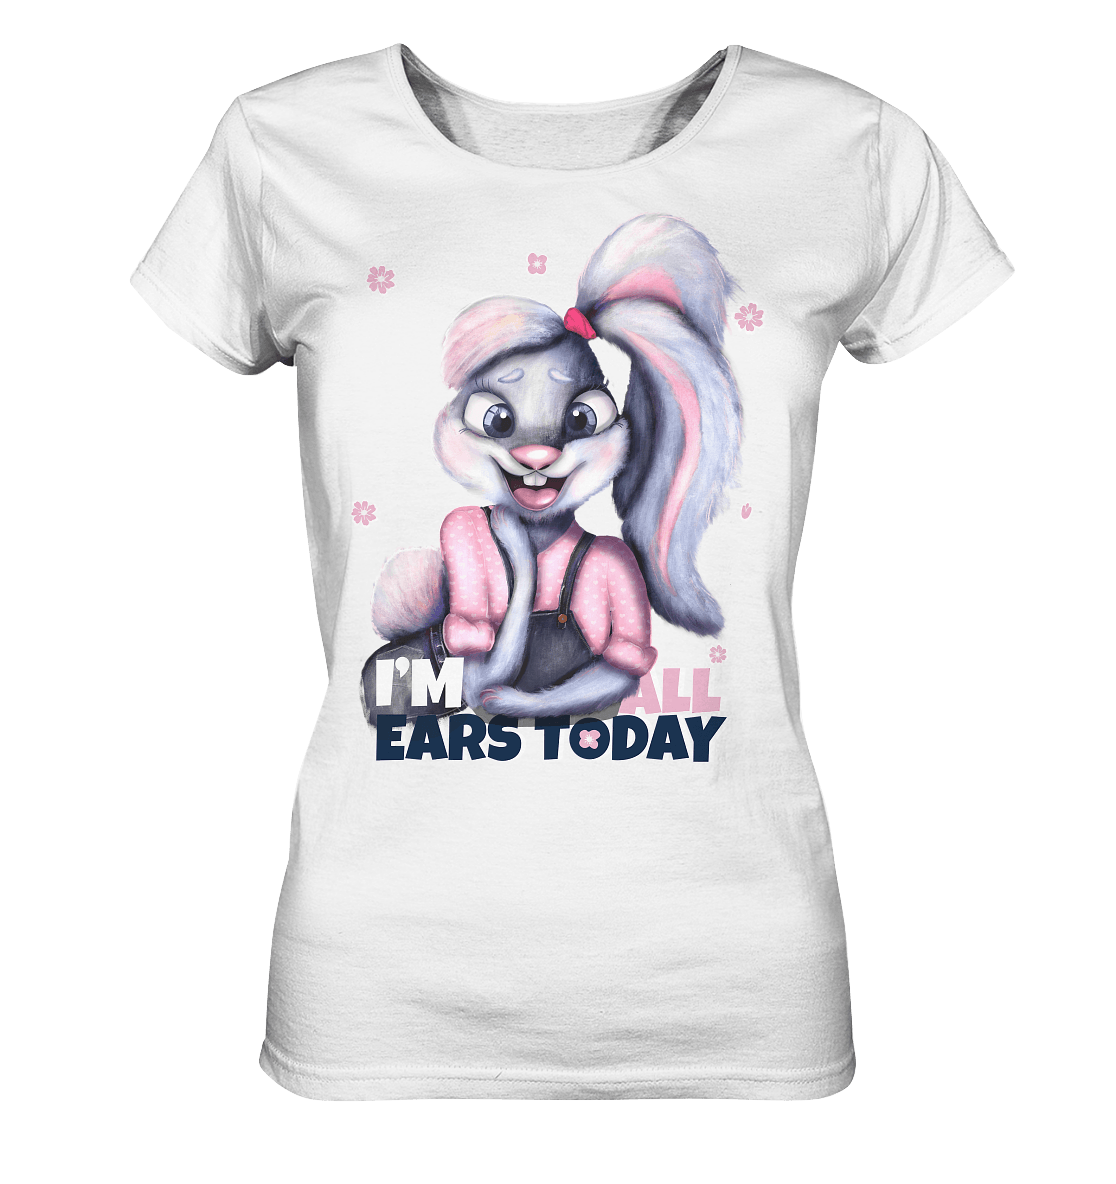 Hase Bunnygirl Shirt in weiß mit lustigen Hase Print